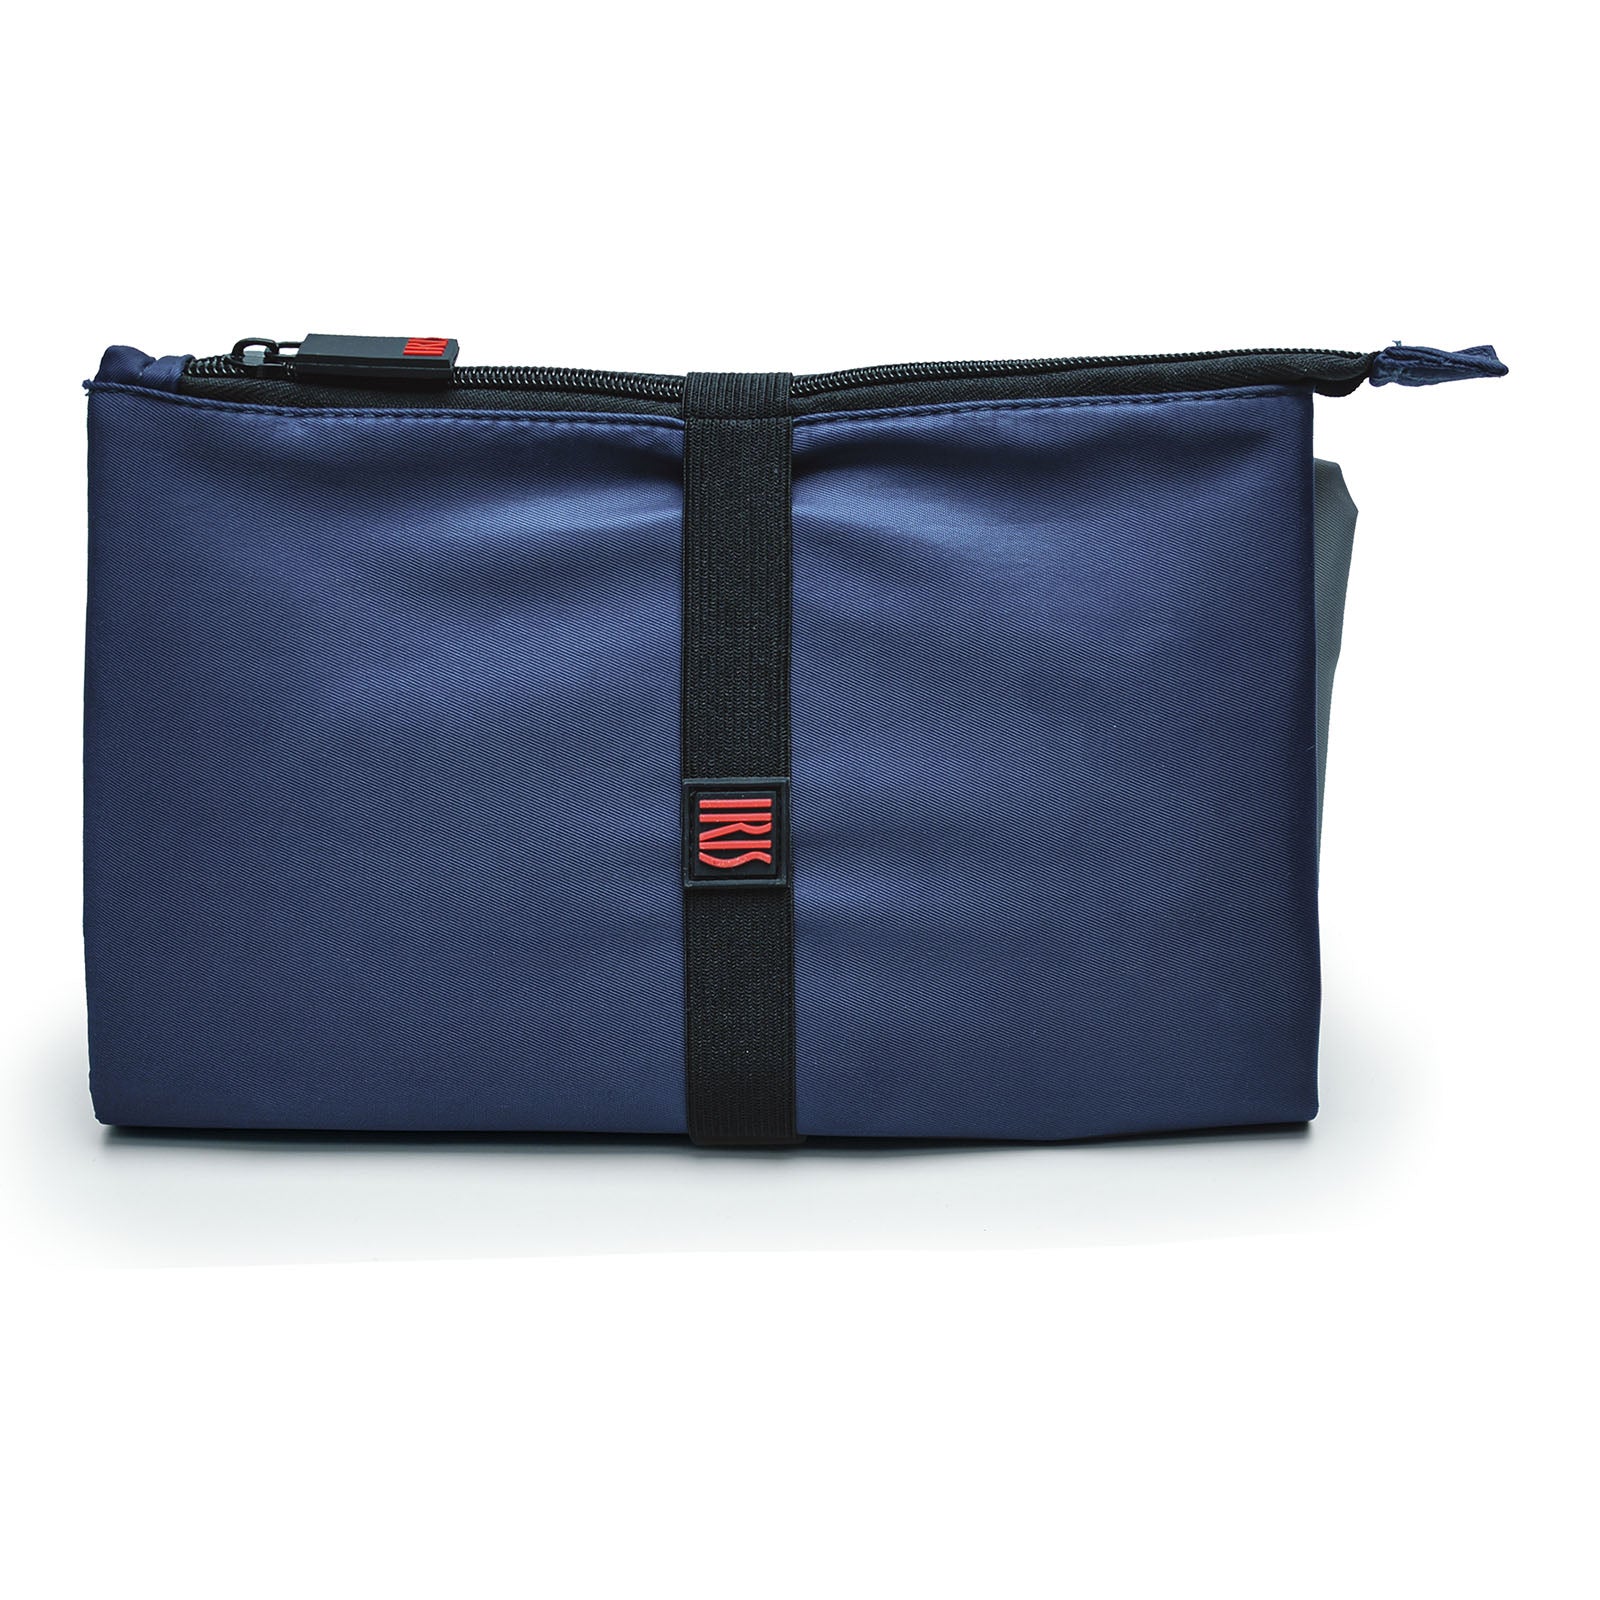 IRIS Snack Bag - Bolsa Porta Alimentos con Cierre de Cremallera y Goma Ajustable. Azul Klein